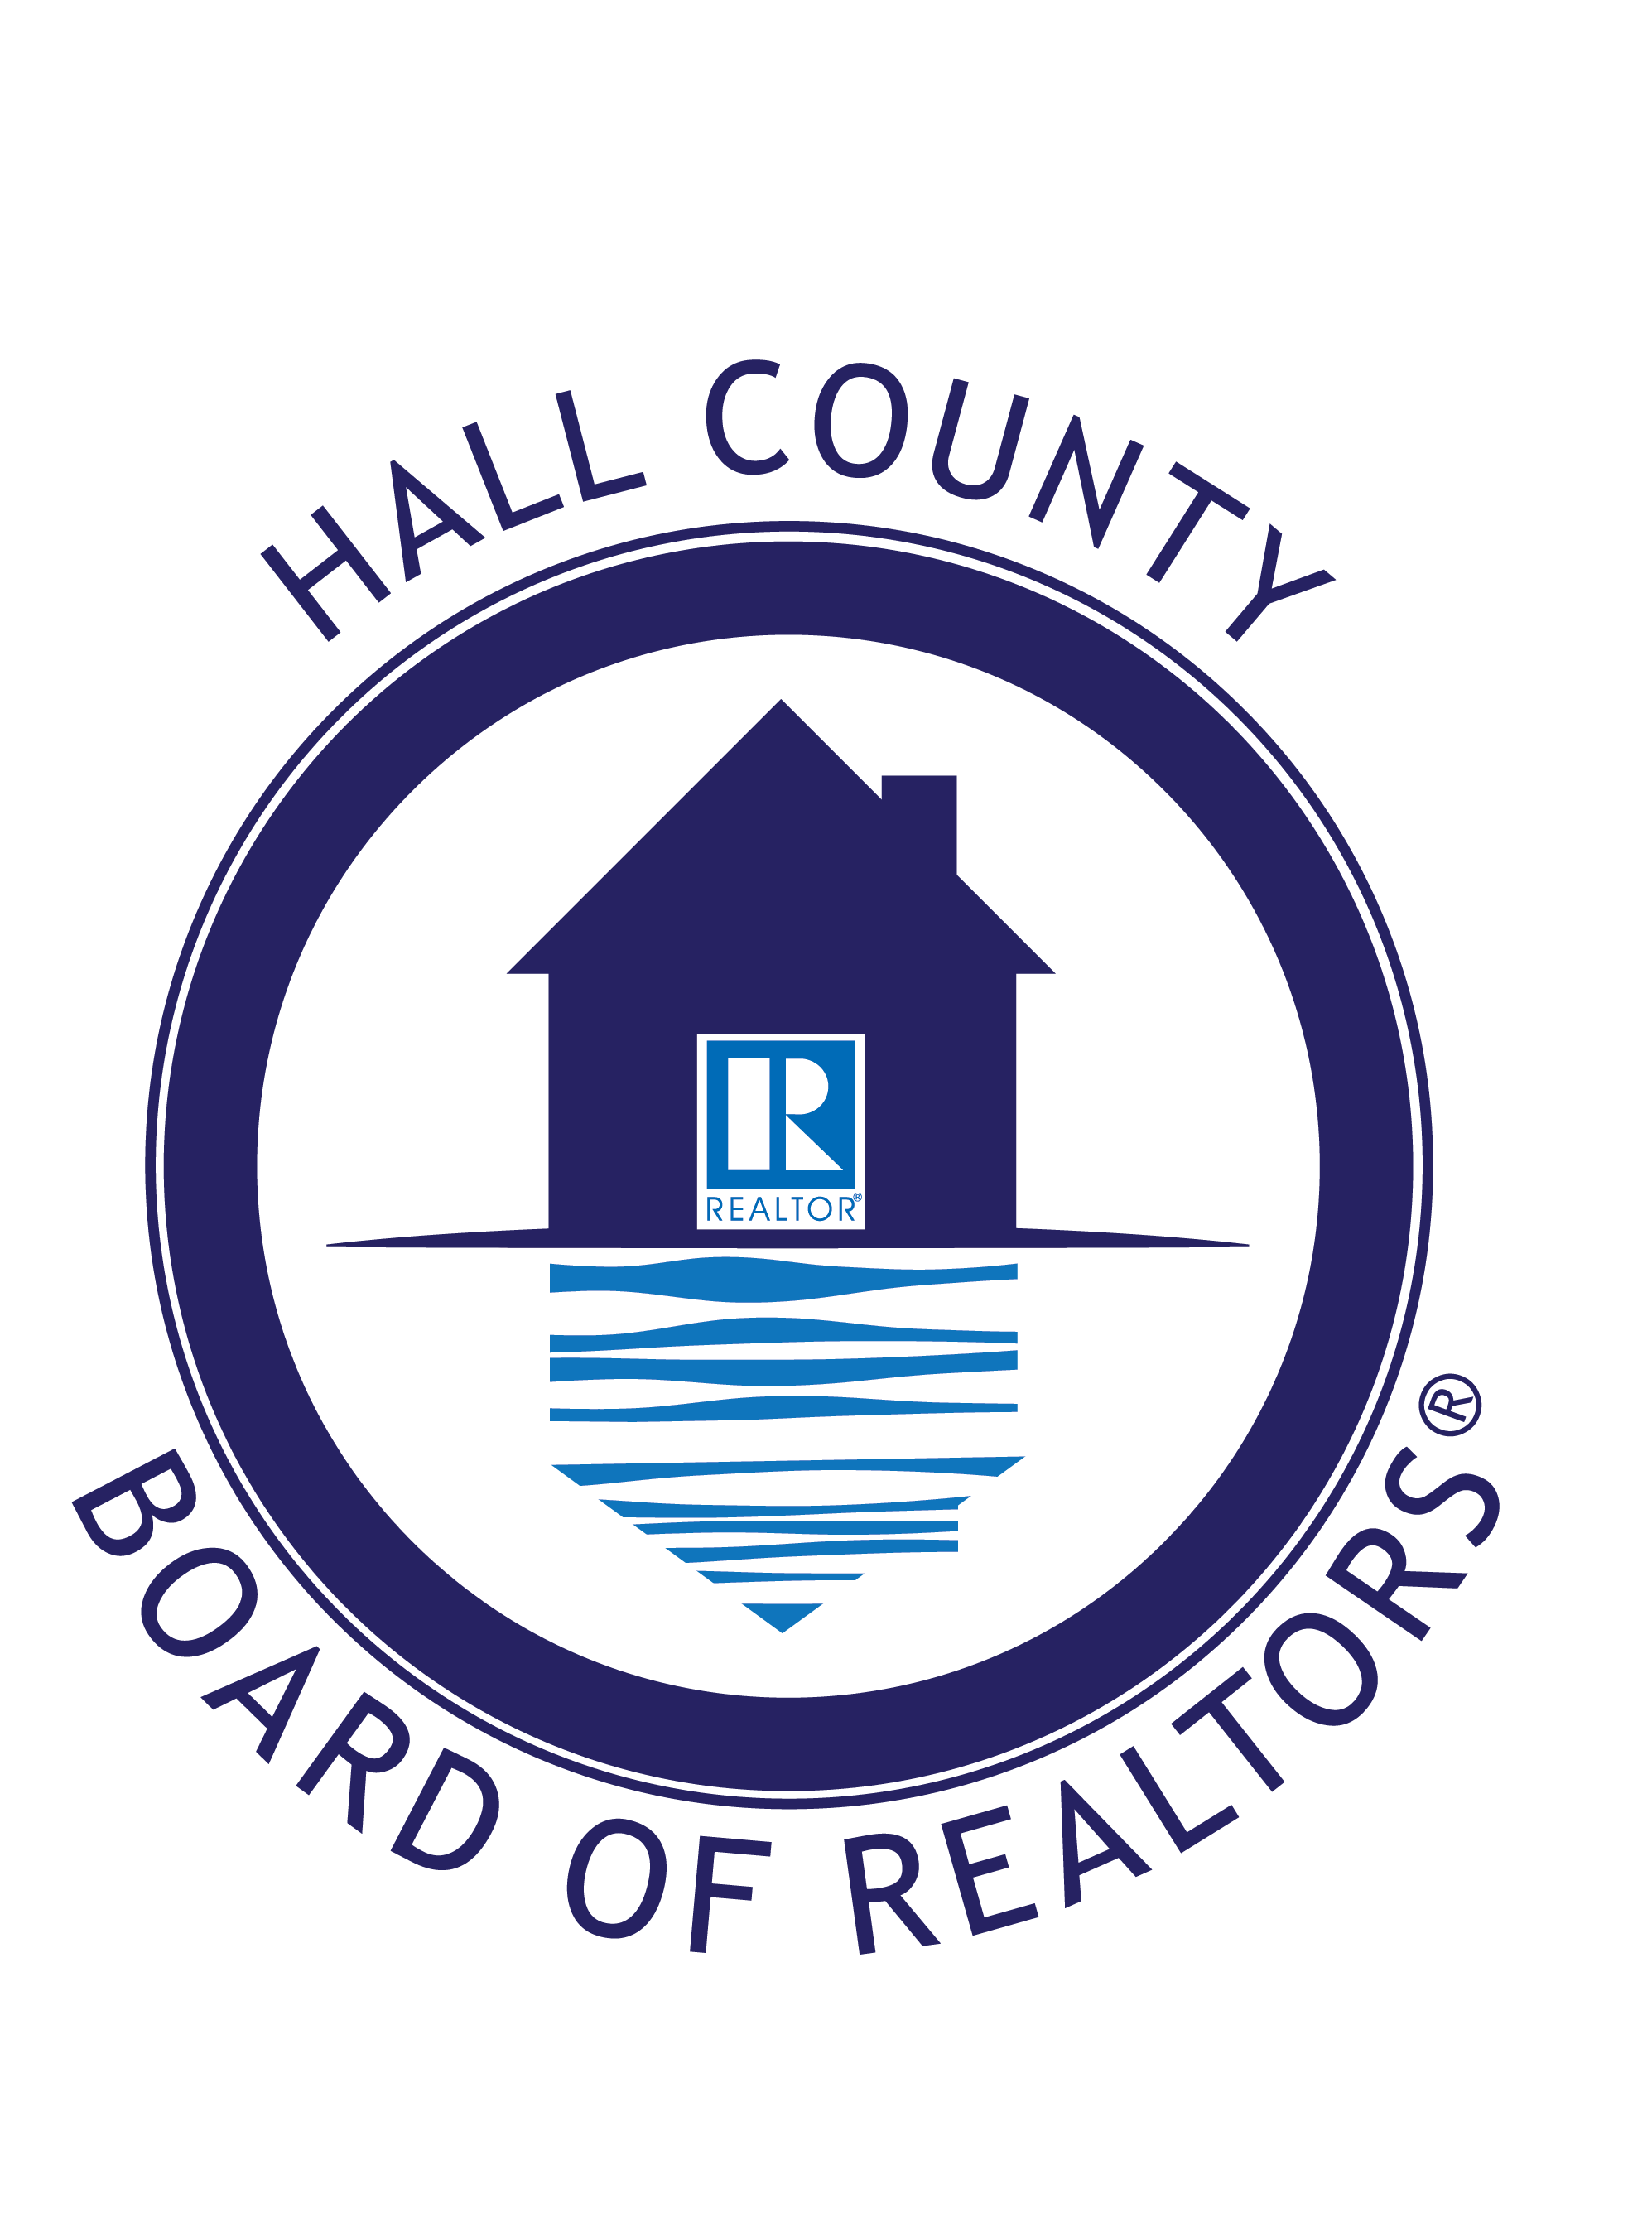 hall county realtors logo